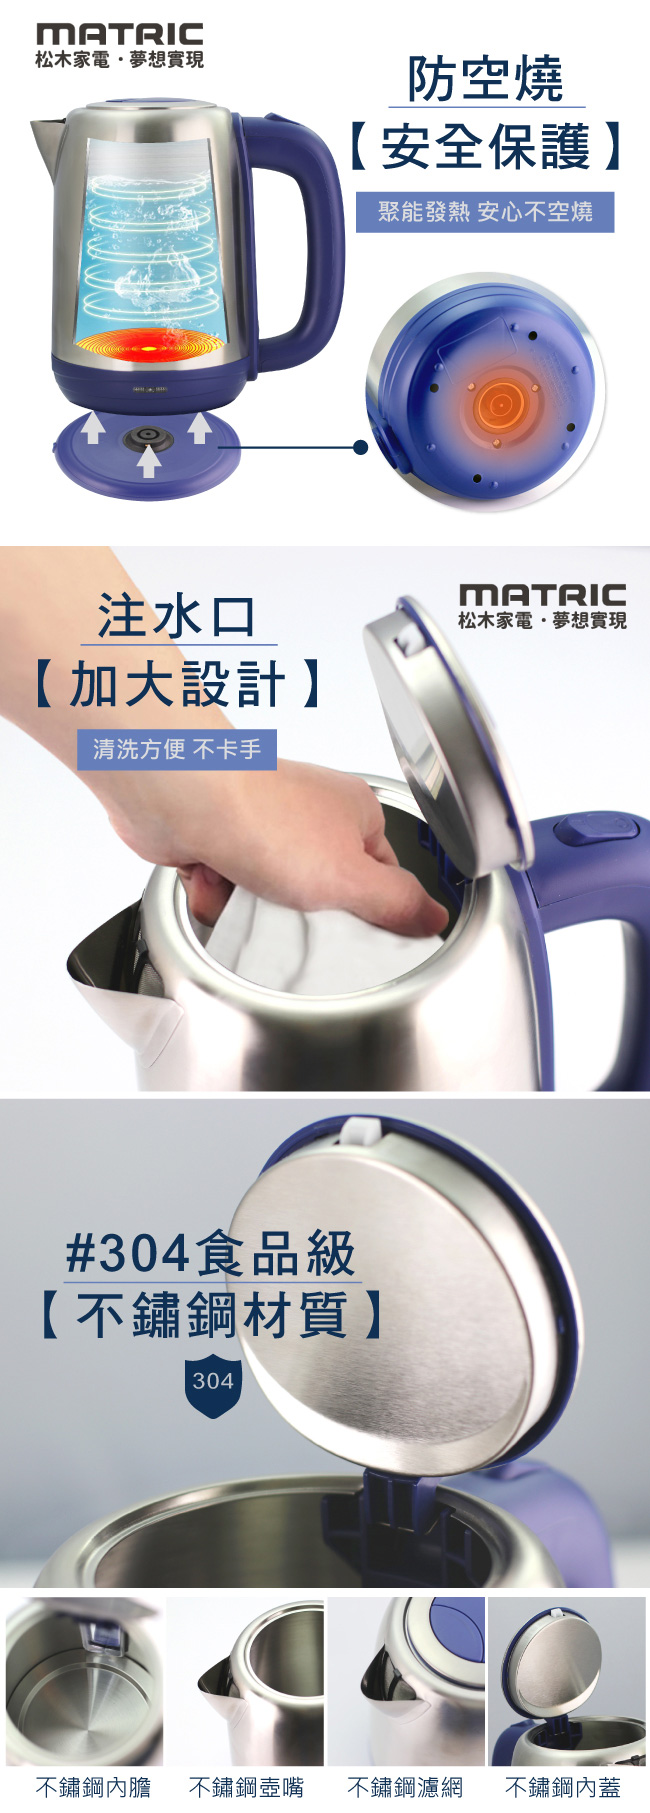 松木家電MATRIC-1.7L不鏽鋼快煮壺(MX-KT1715)